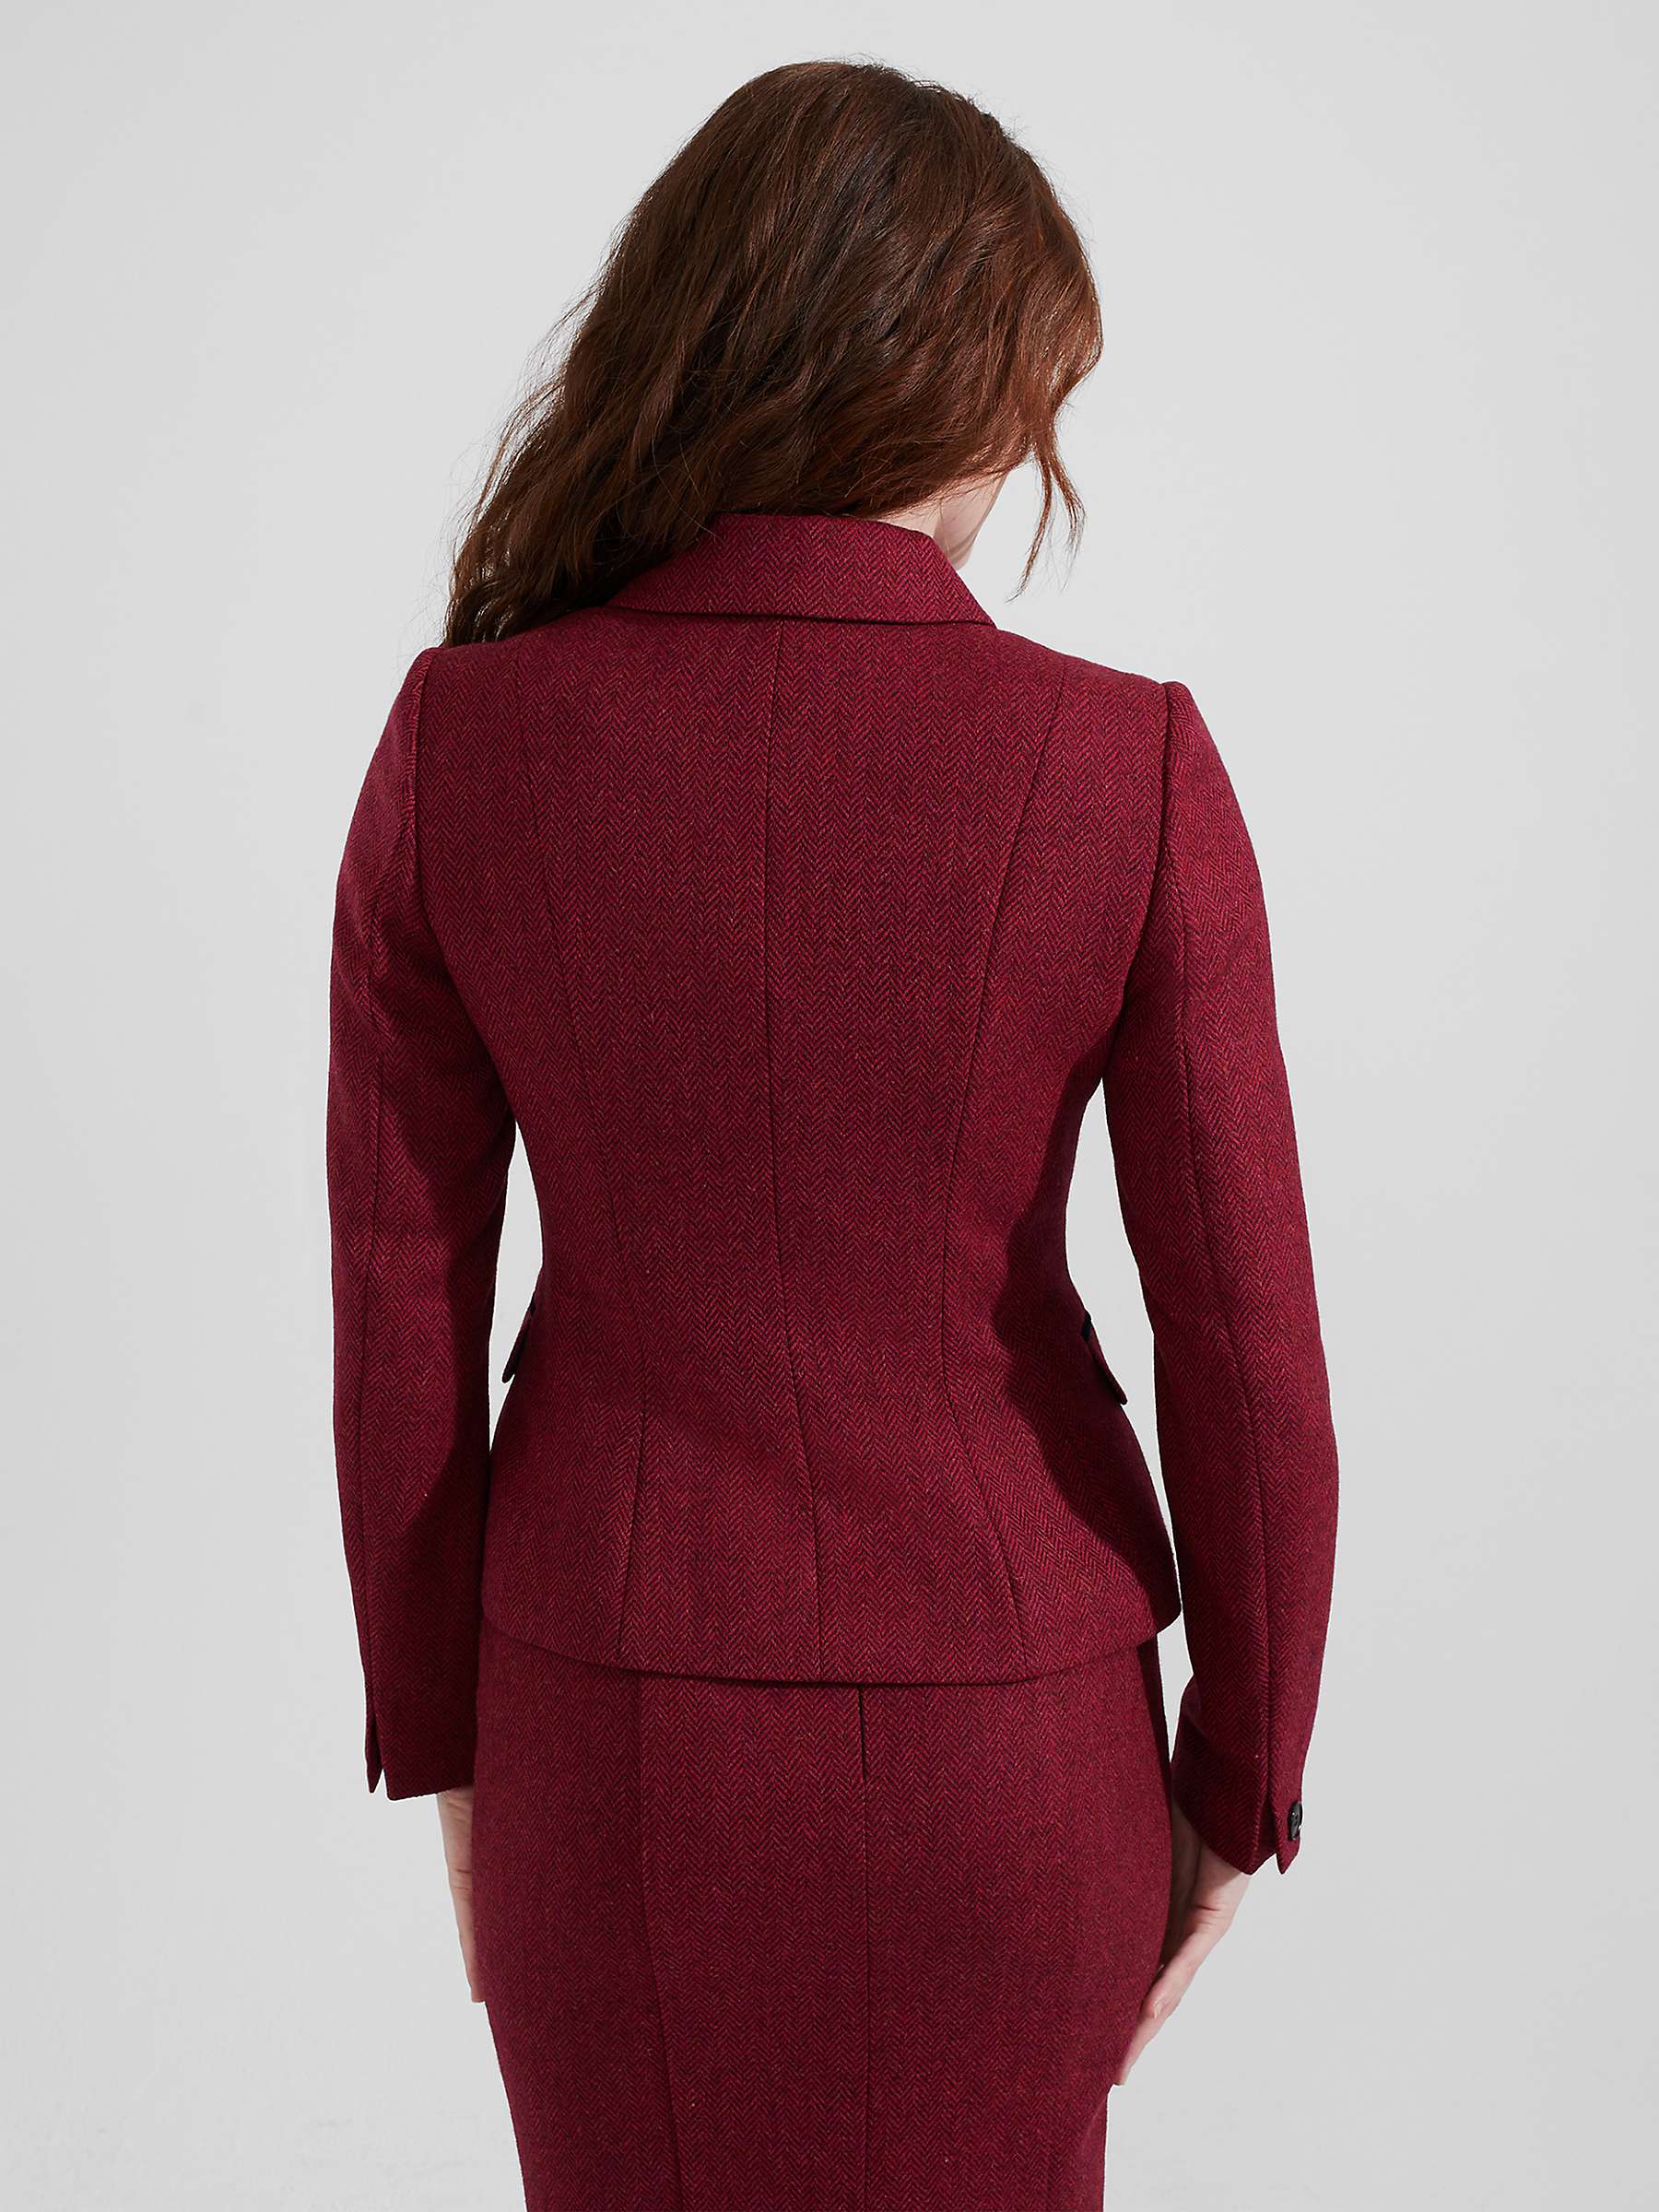 Buy Hobbs Daneilla Herringbone Wool Tweed Jacket, Pink/Multi Online at johnlewis.com